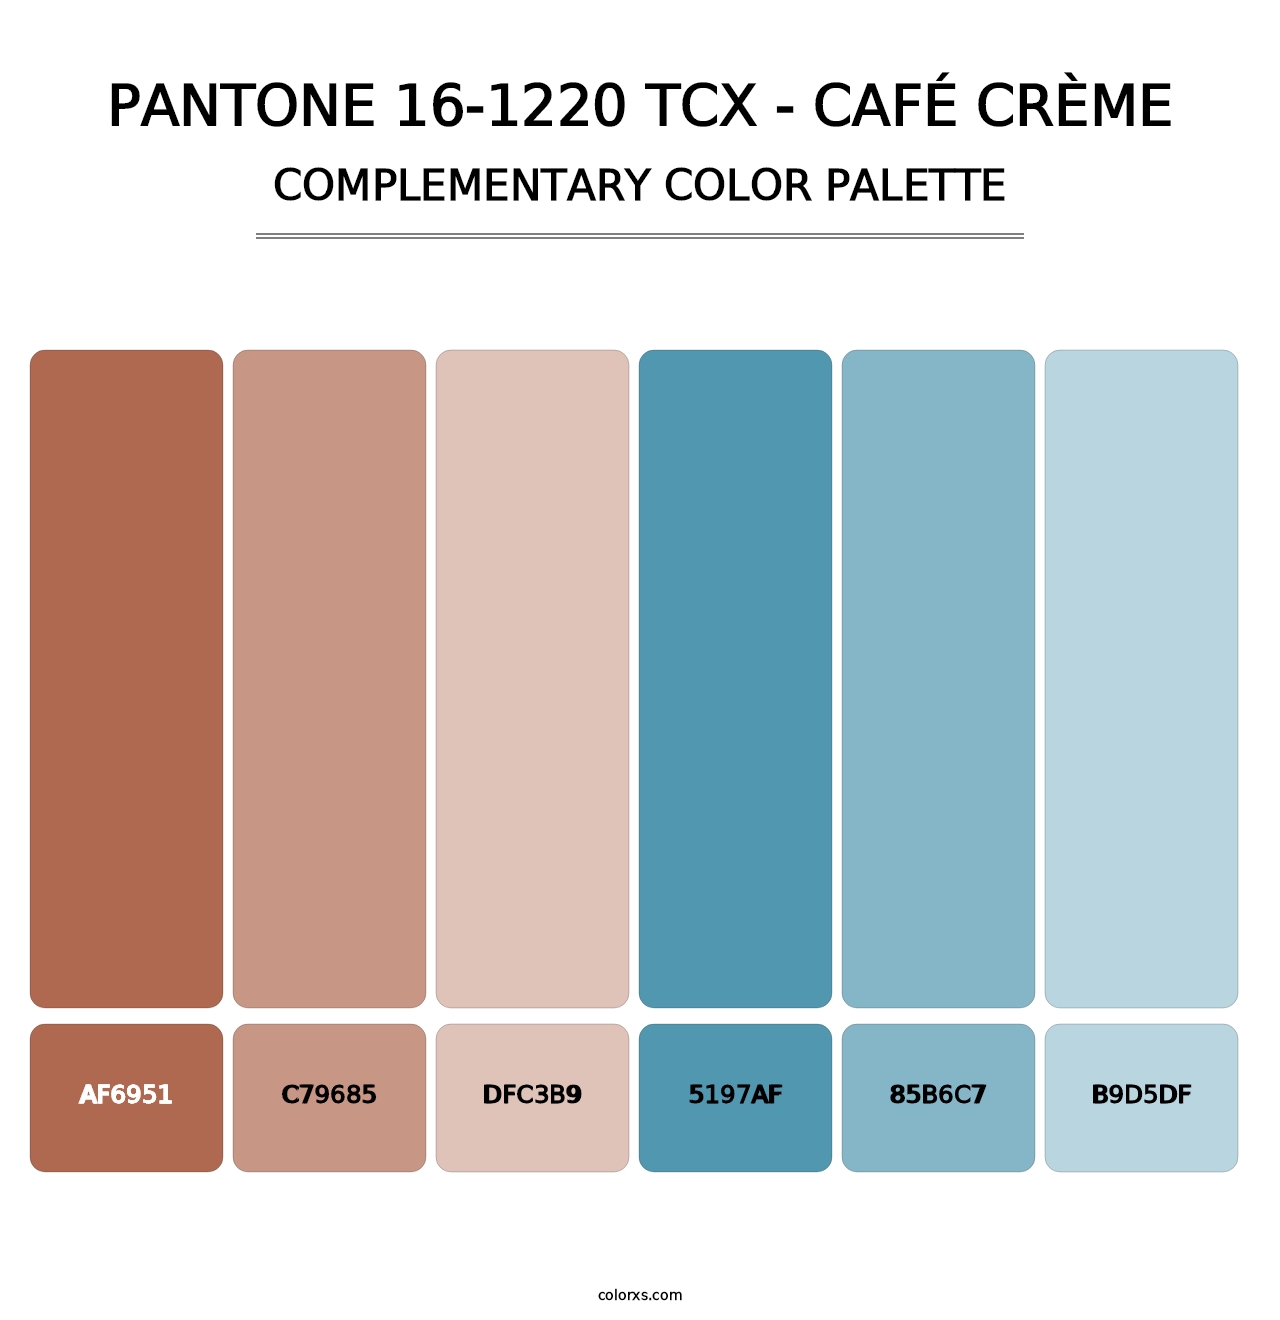 PANTONE 16-1220 TCX - Café Crème - Complementary Color Palette